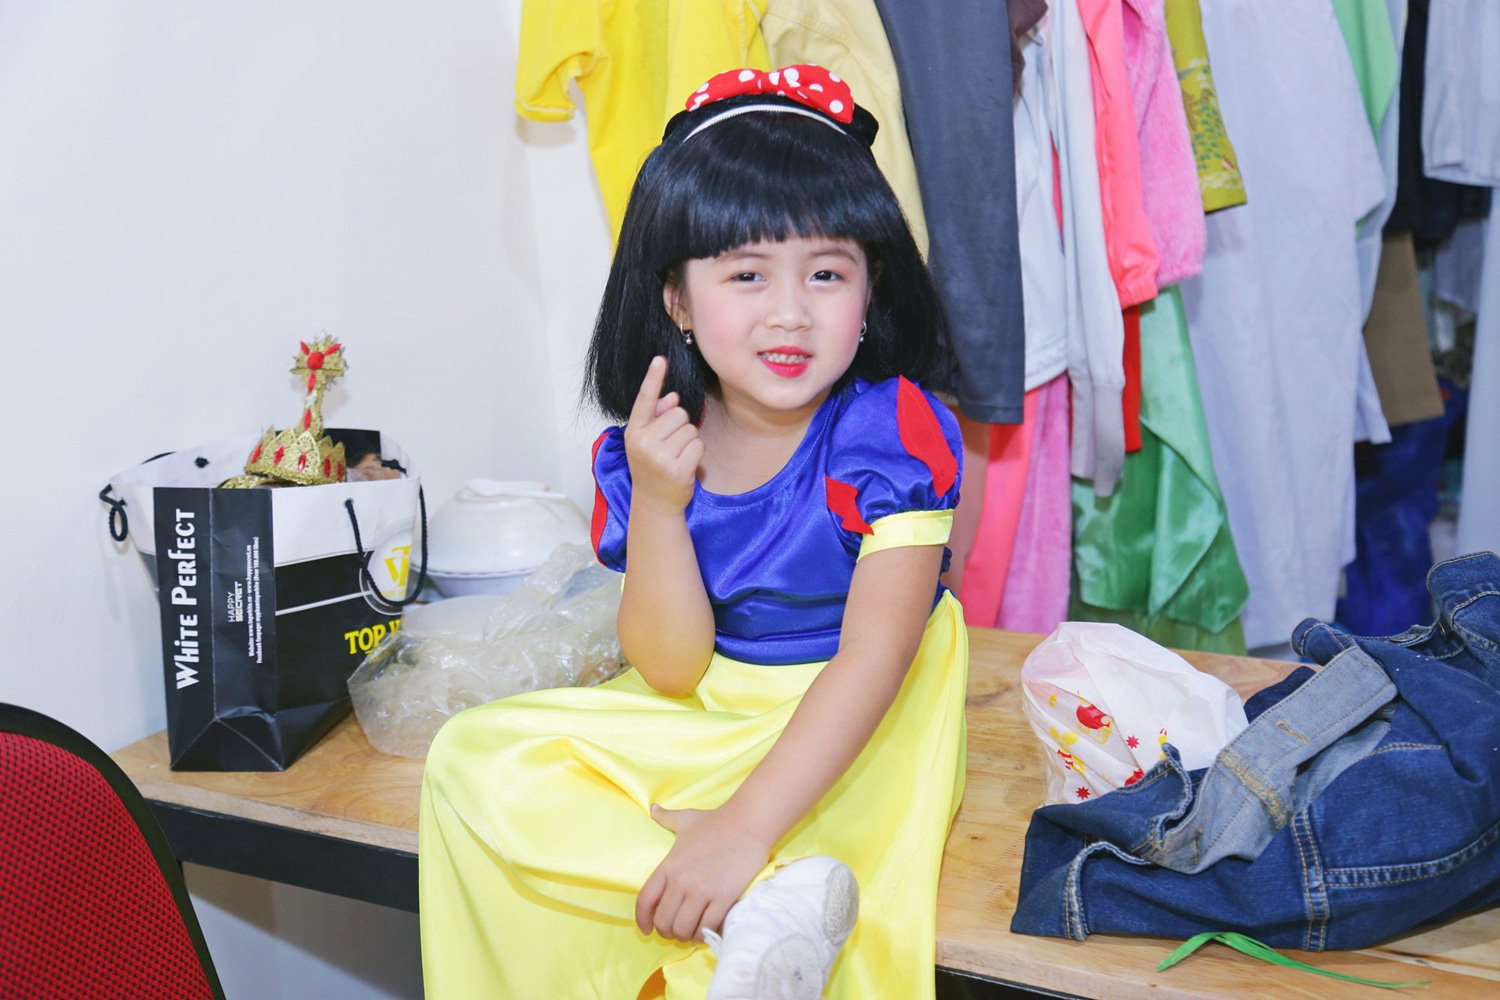 “Con gái màn ảnh” của Thu Trang: Chưa đầy mười tuổi nhưng đã góp mặt trong hàng loạt phim ăn khách - Ảnh 1.